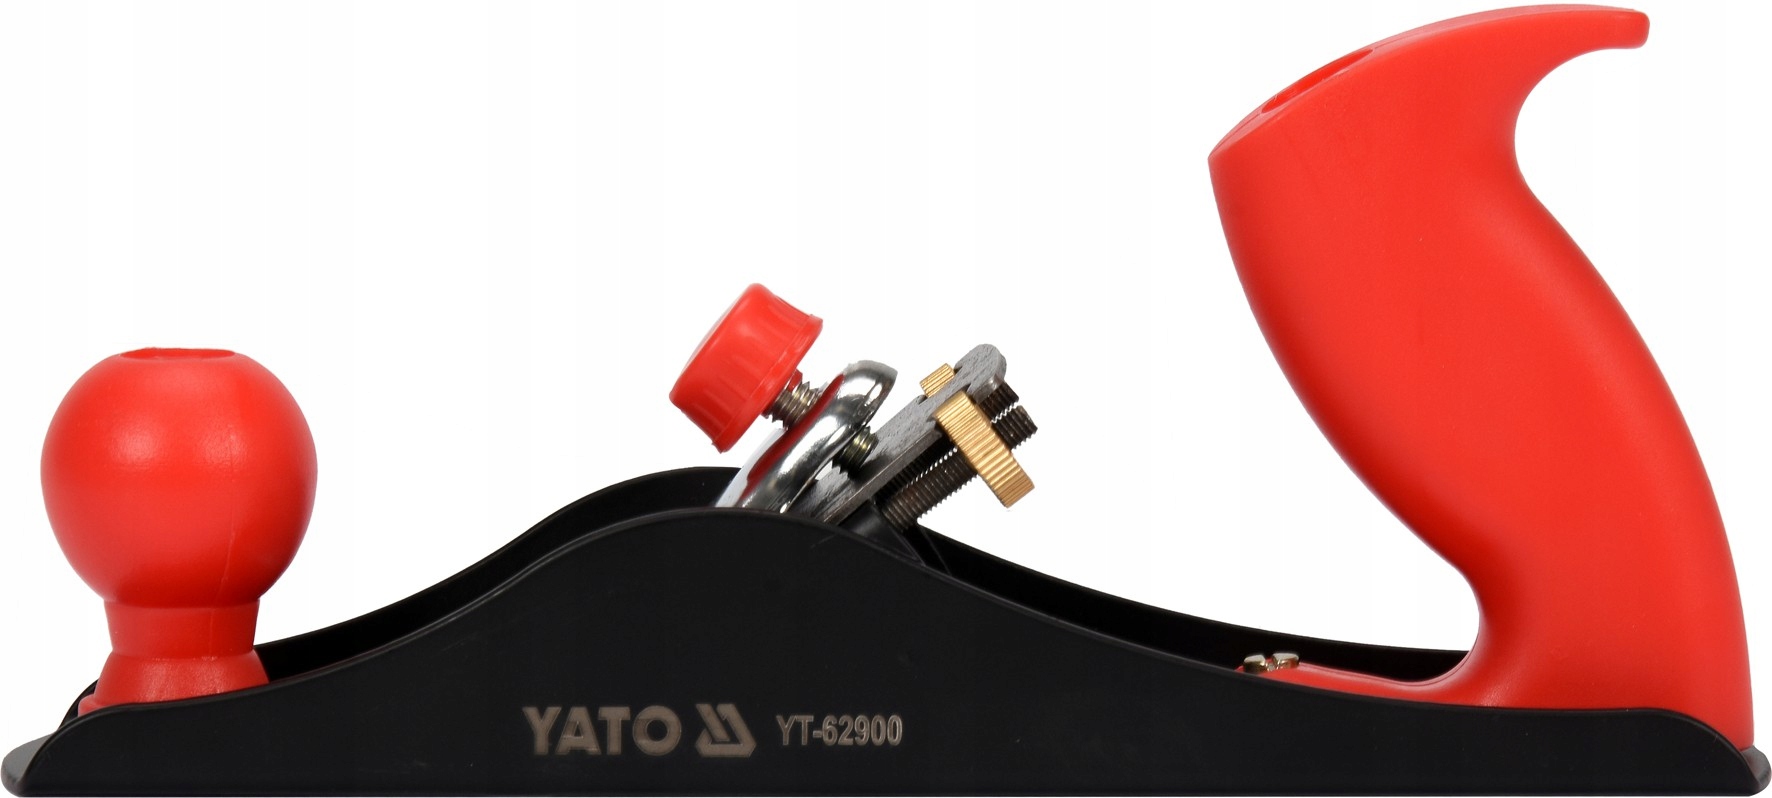 Деревянный металлический строгальный станок L-235 мм лезвие 44 мм Yato бренд Yato